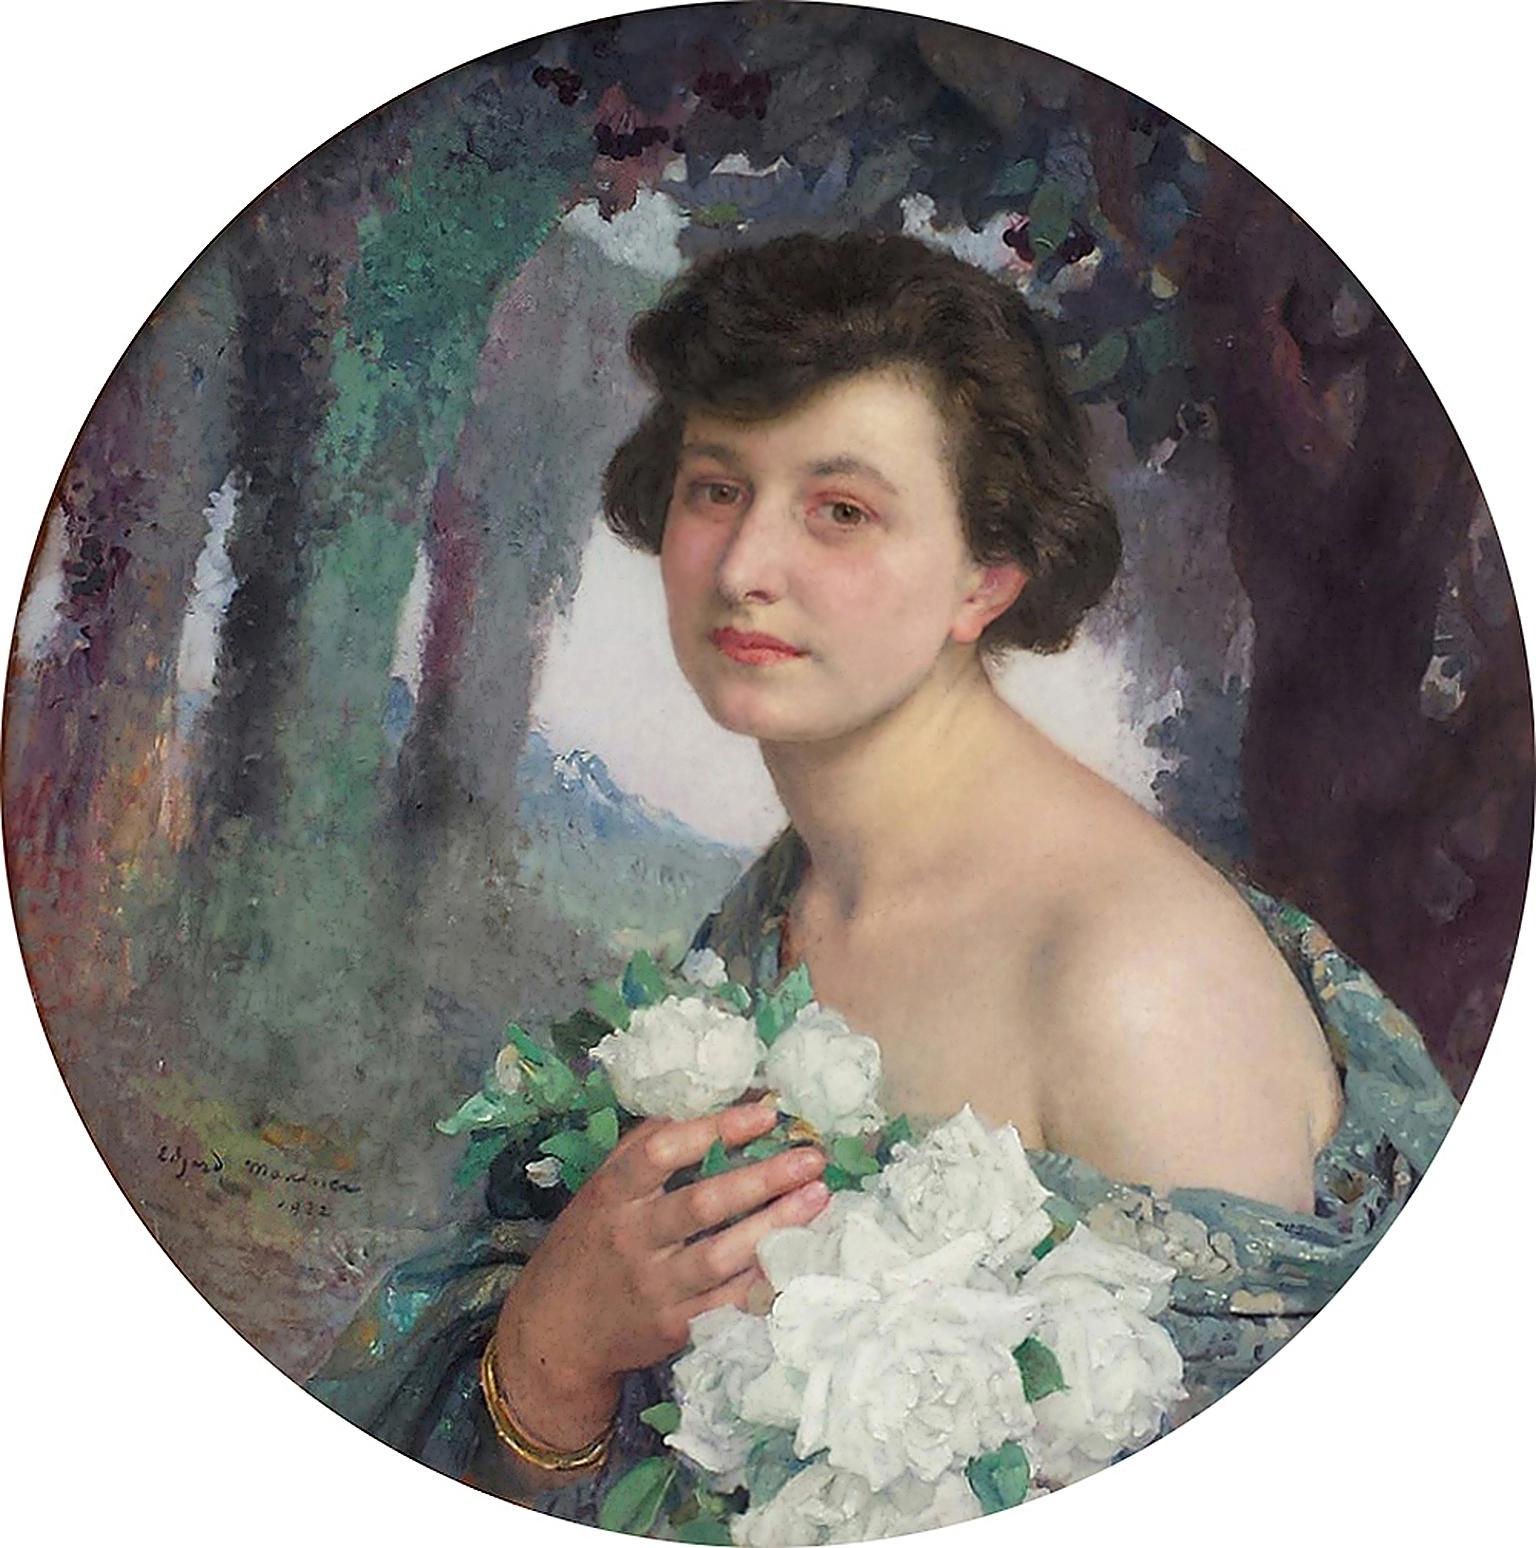 Femme élégante tenant des fleurs de roses blanches, portrait champetre symboliste français 